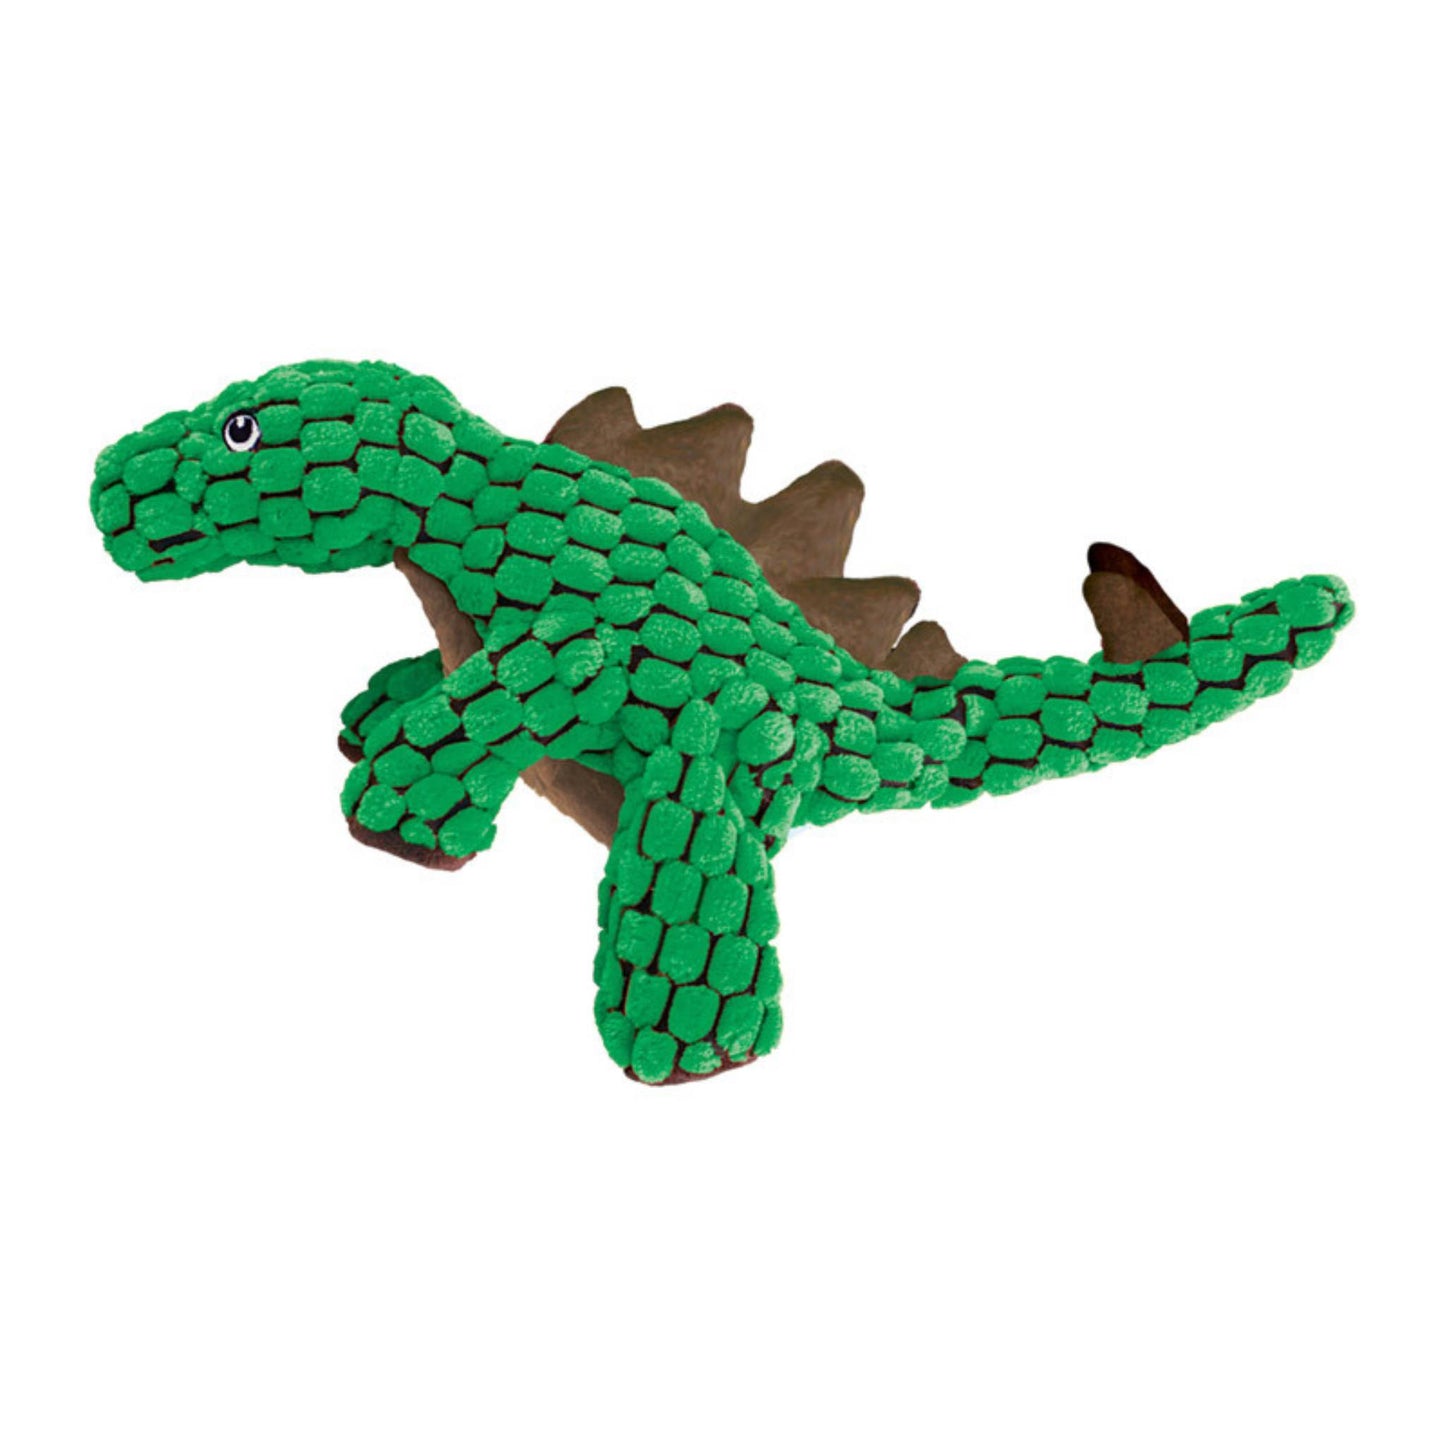 KONG Dynos Stegosaurus Dog Toy